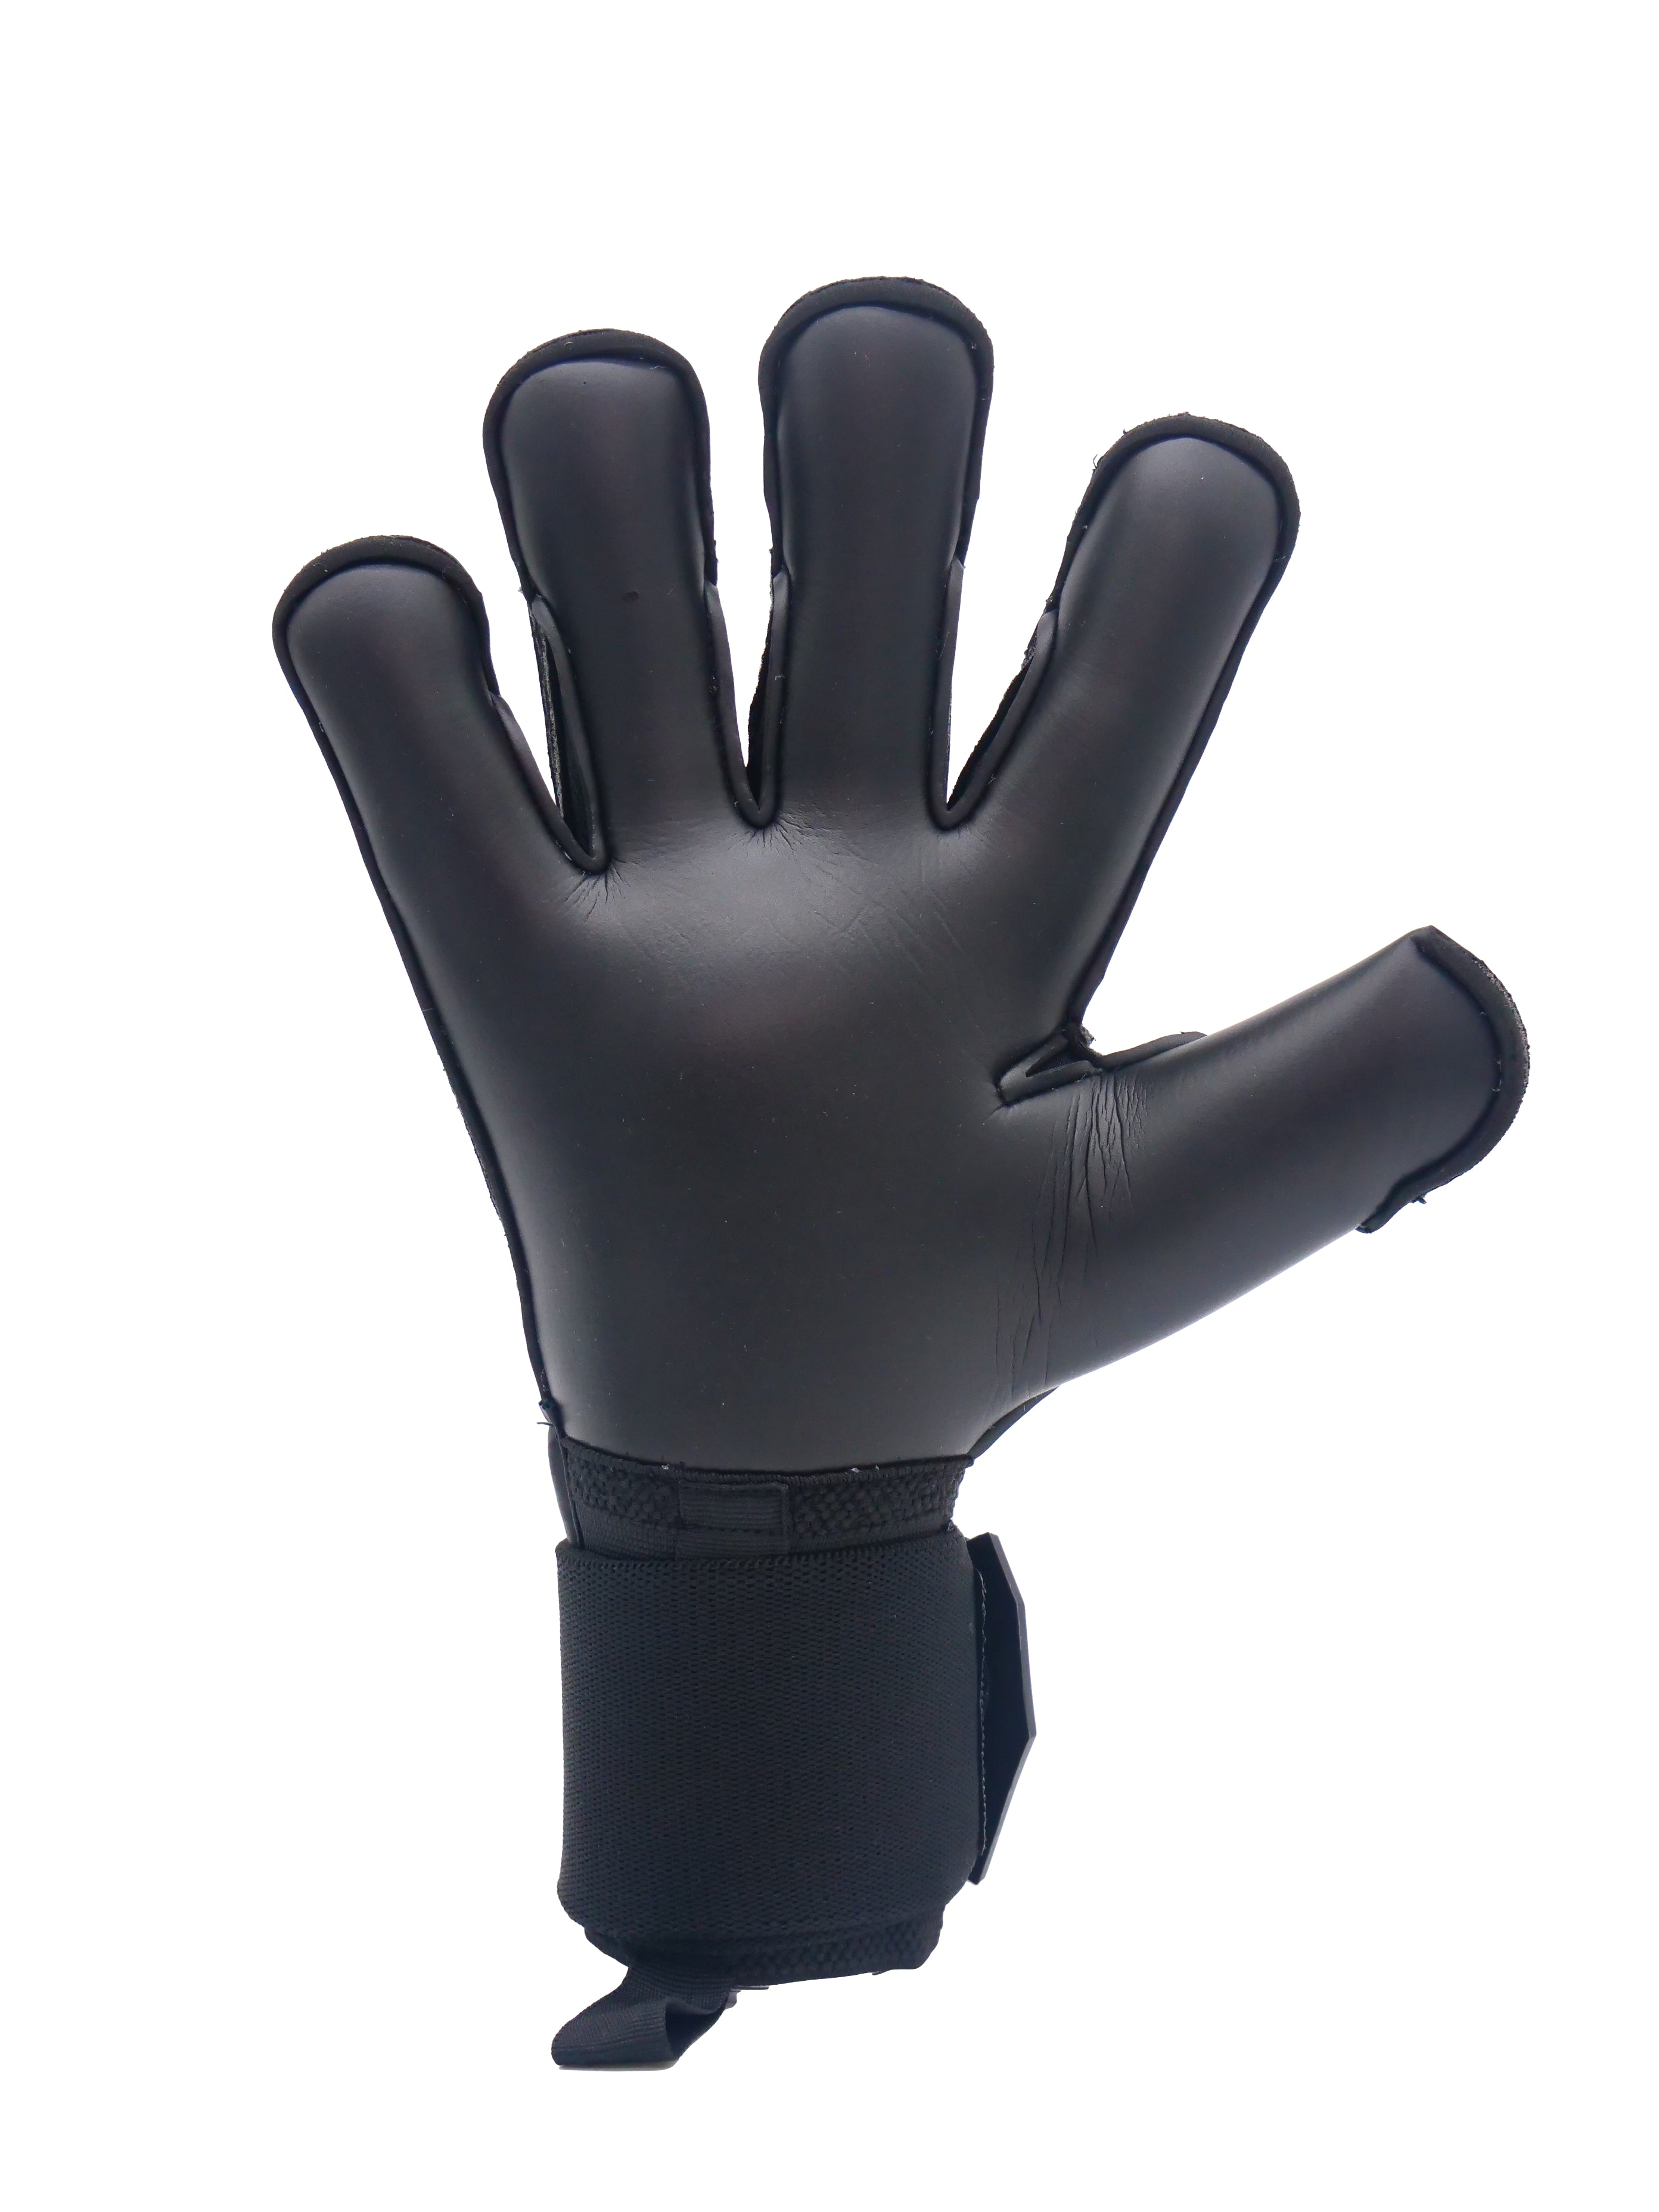 RG Aspro Blackout Gloves